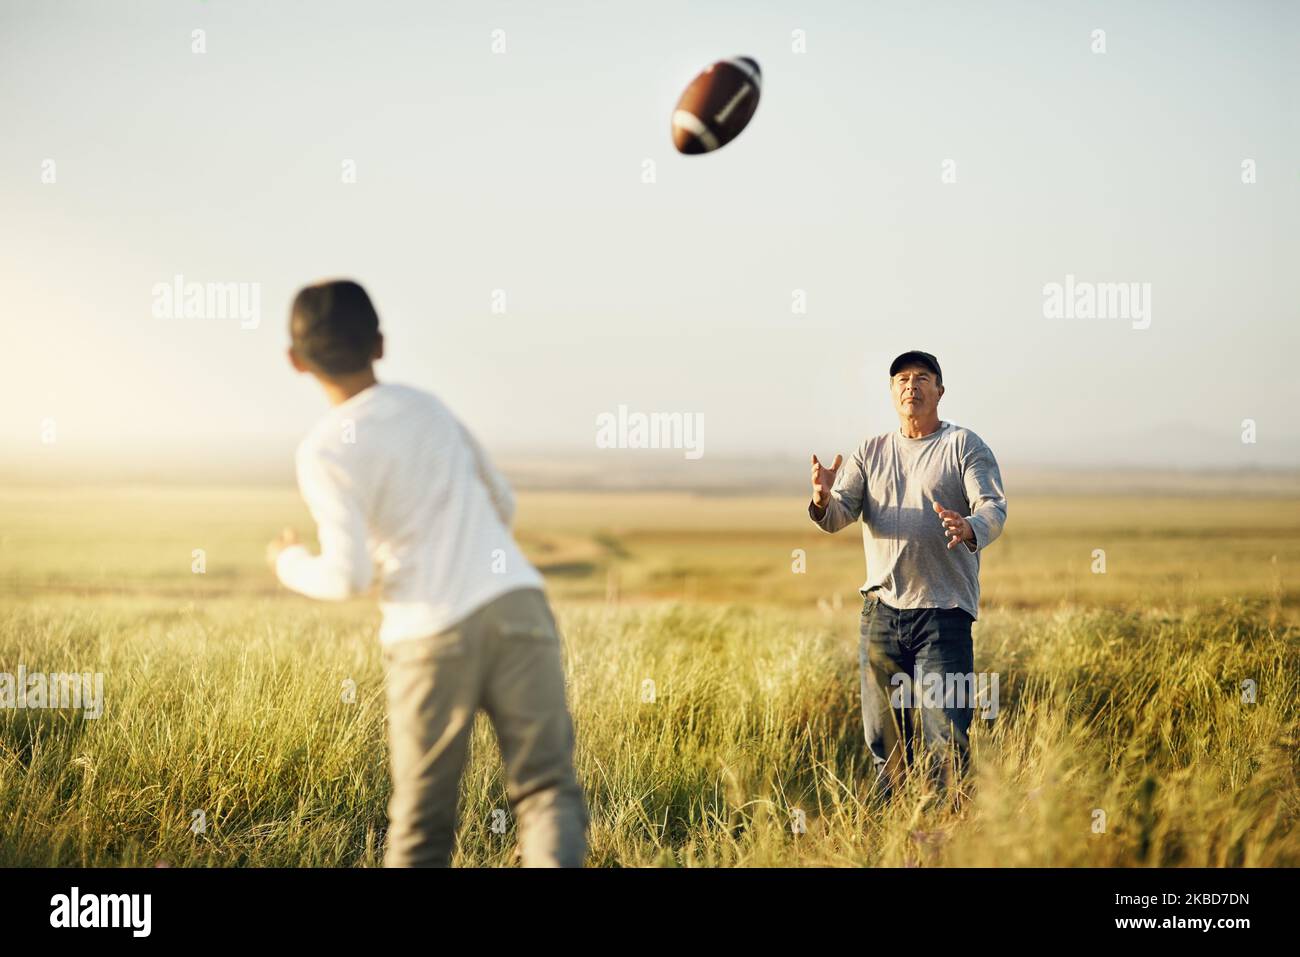 Les enfants qui jouent à l'extérieur sont plus actifs physiquement. Père et fils jouant au football sur un terrain ouvert. Banque D'Images